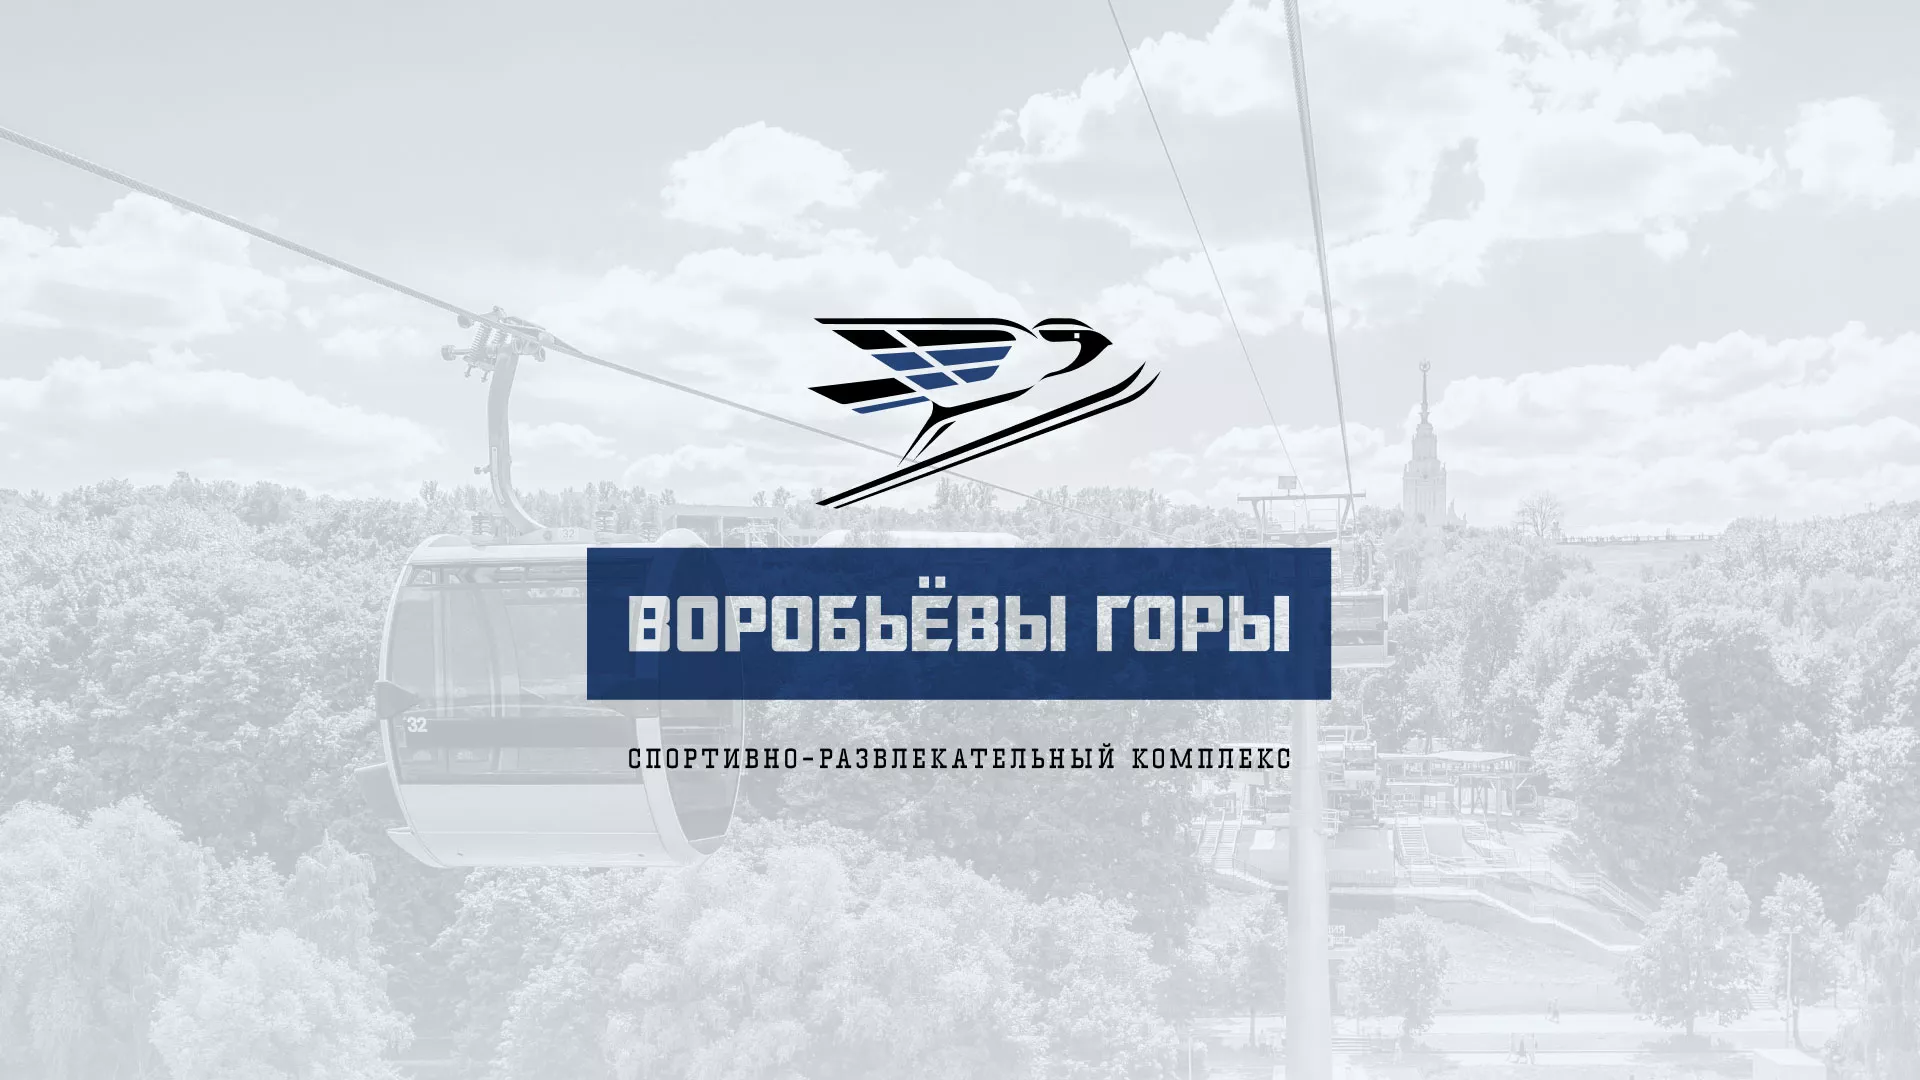 Разработка сайта в Краснодаре для спортивно-развлекательного комплекса «Воробьёвы горы»